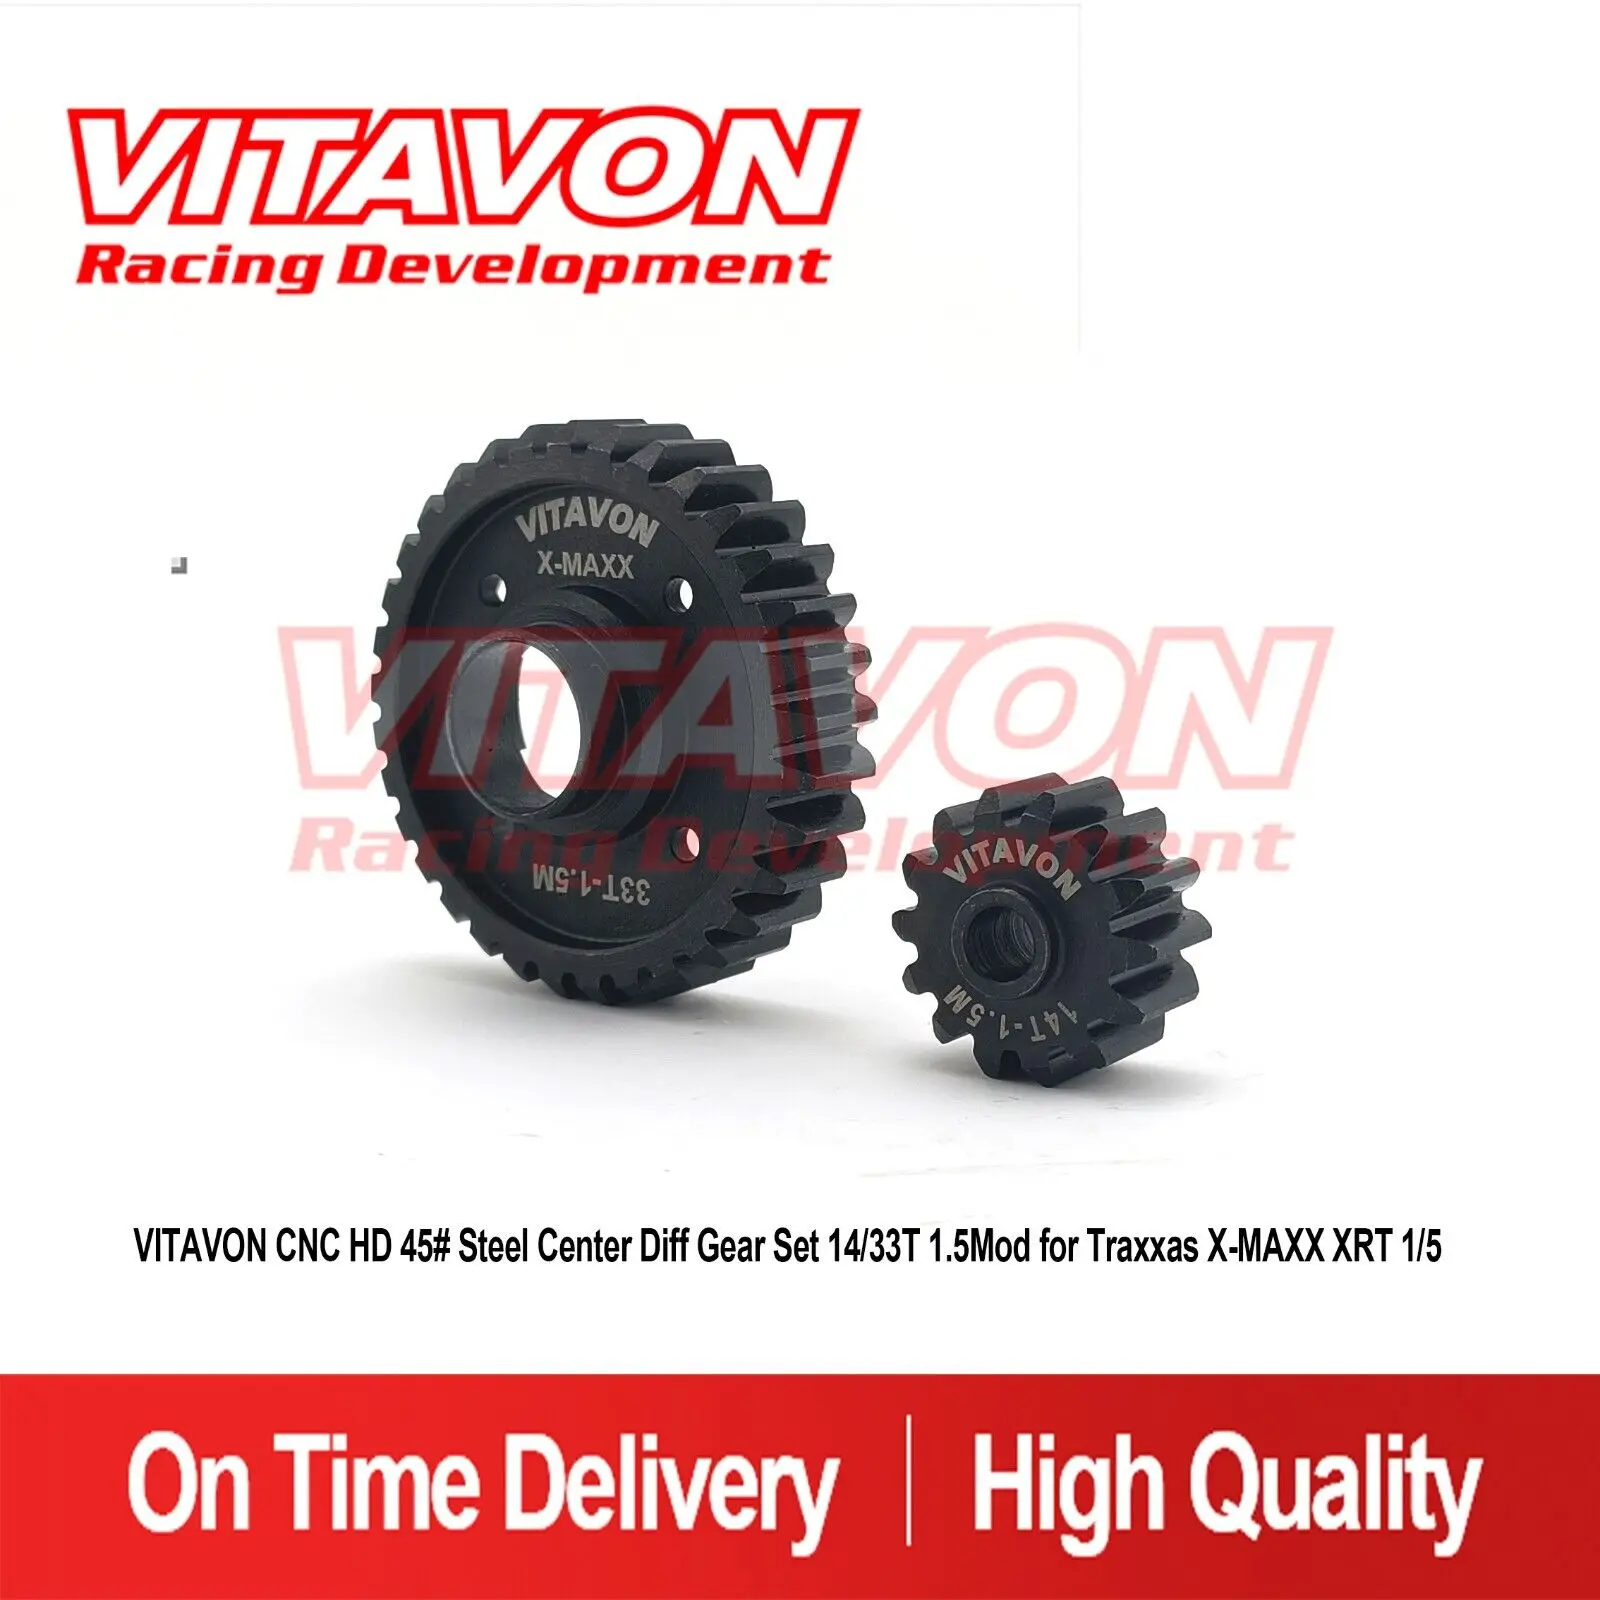 

VITAVON CNC HD 45# Steel Center Diff Gear Set14/33T 1.5Mod For Traxxas X-MAXX XRT1/5